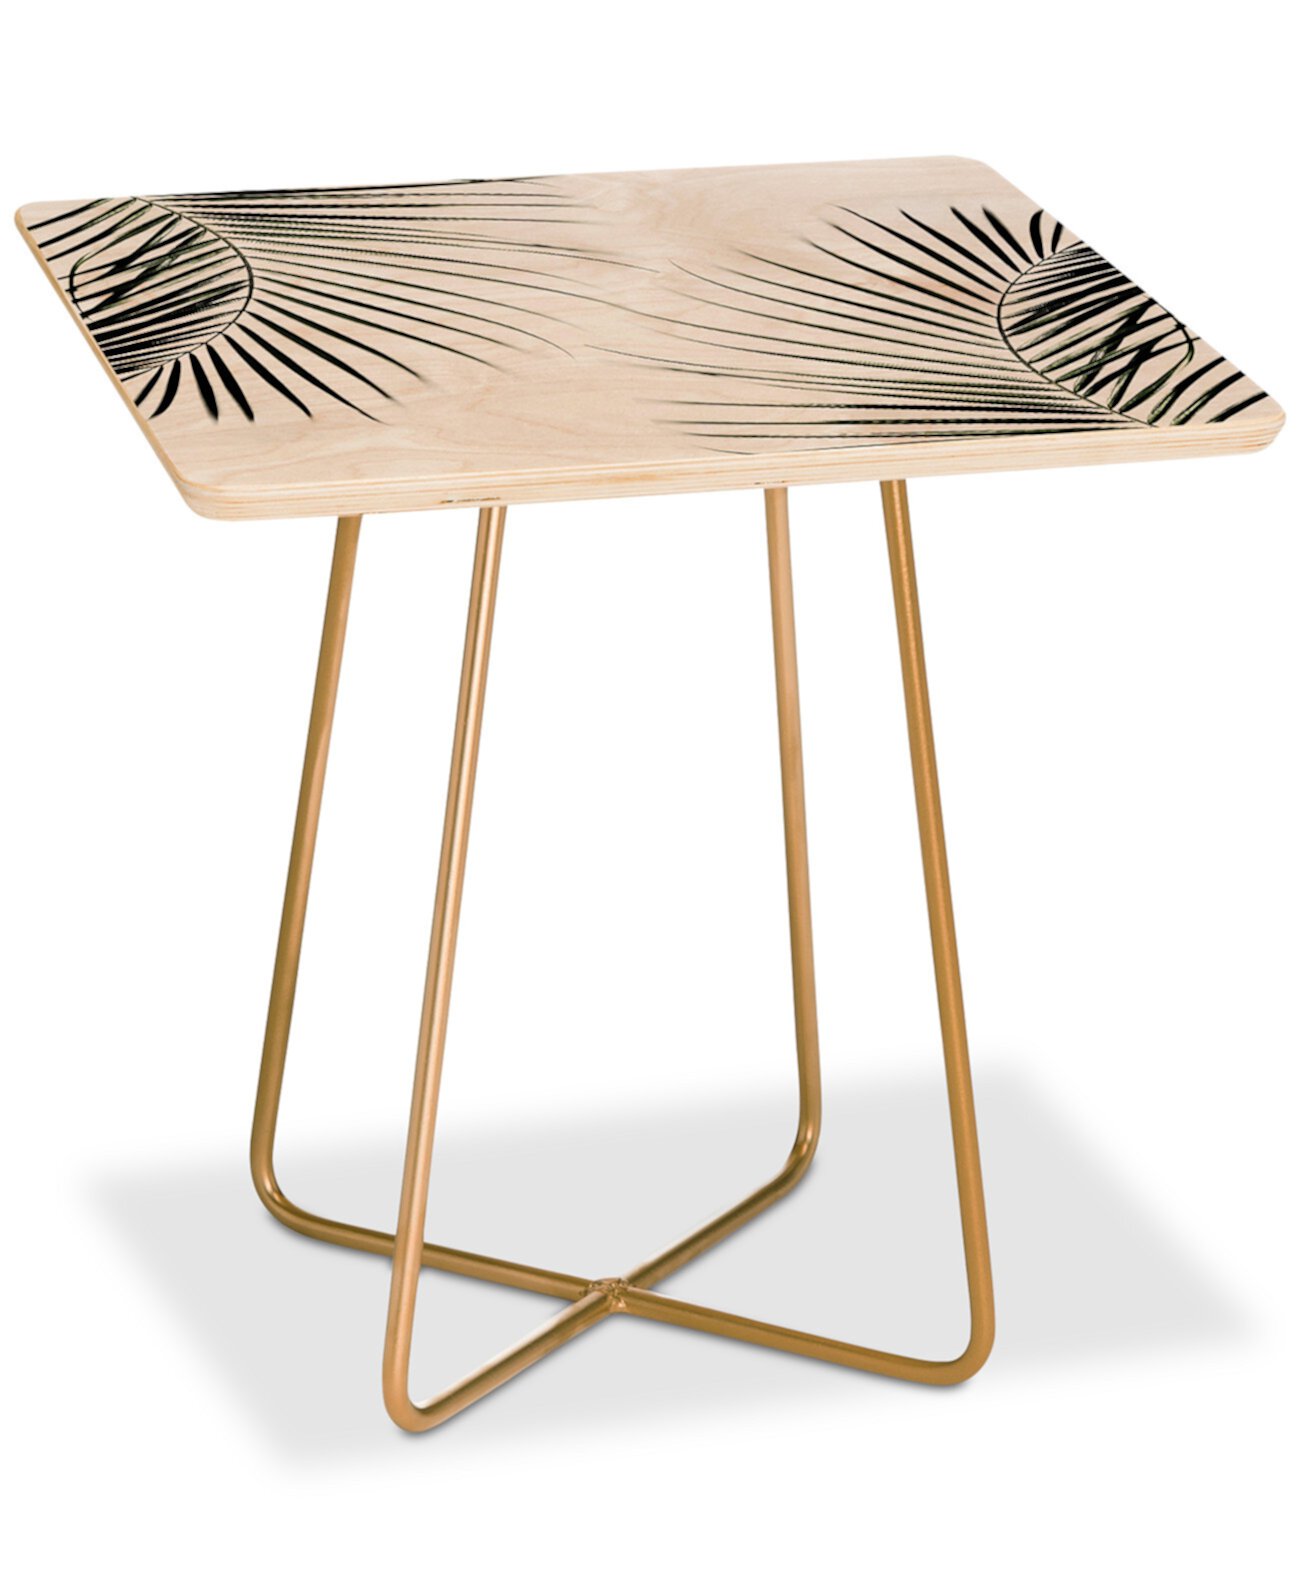 Квадратный столик Mareike Boehmer с пальмовыми листьями Deny Designs